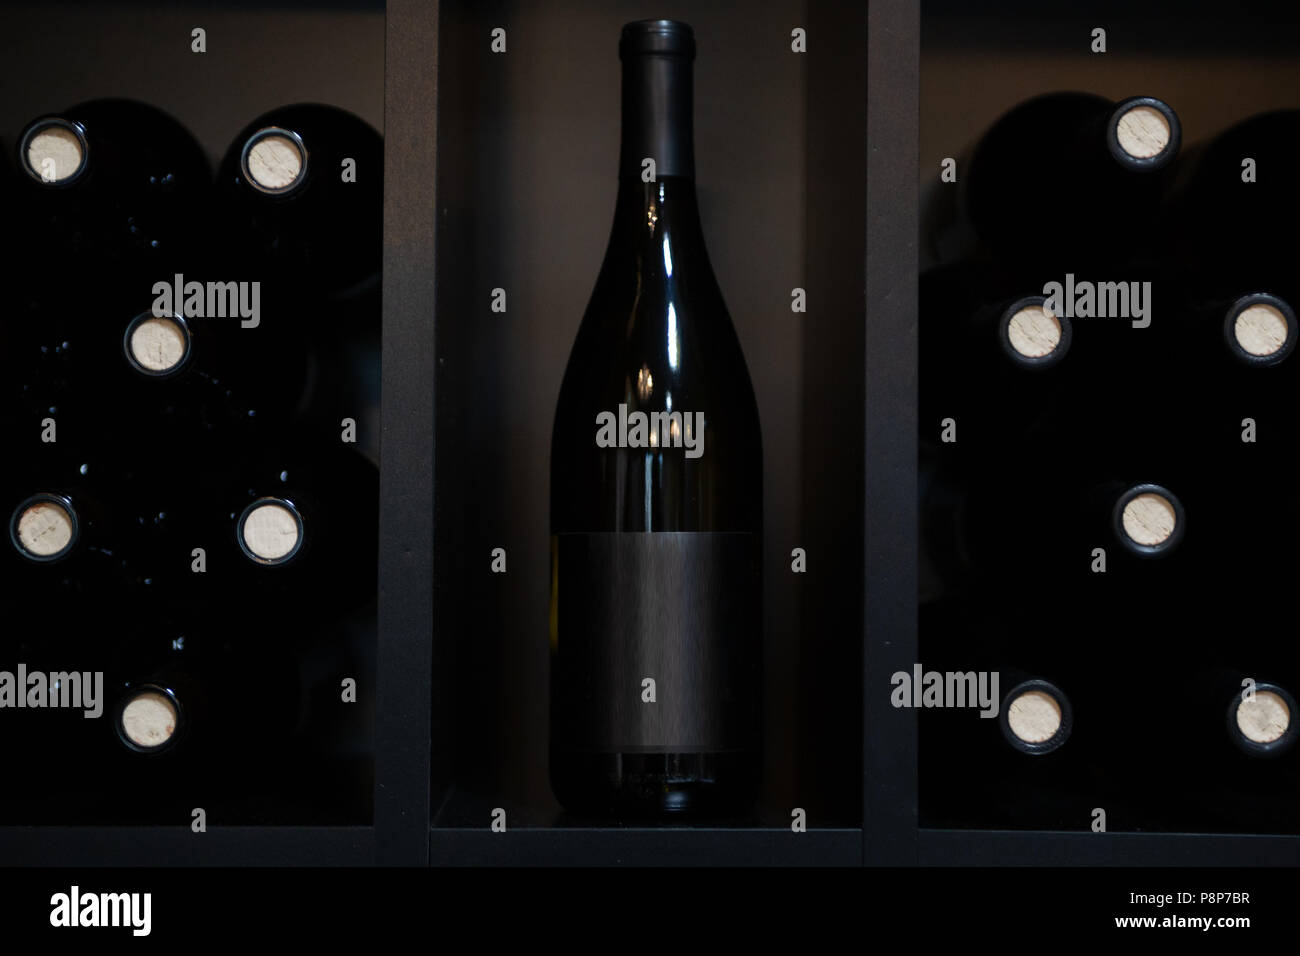 Leer beschriftete Flaschen Rotwein auf einem Regal Stockfotografie - Alamy